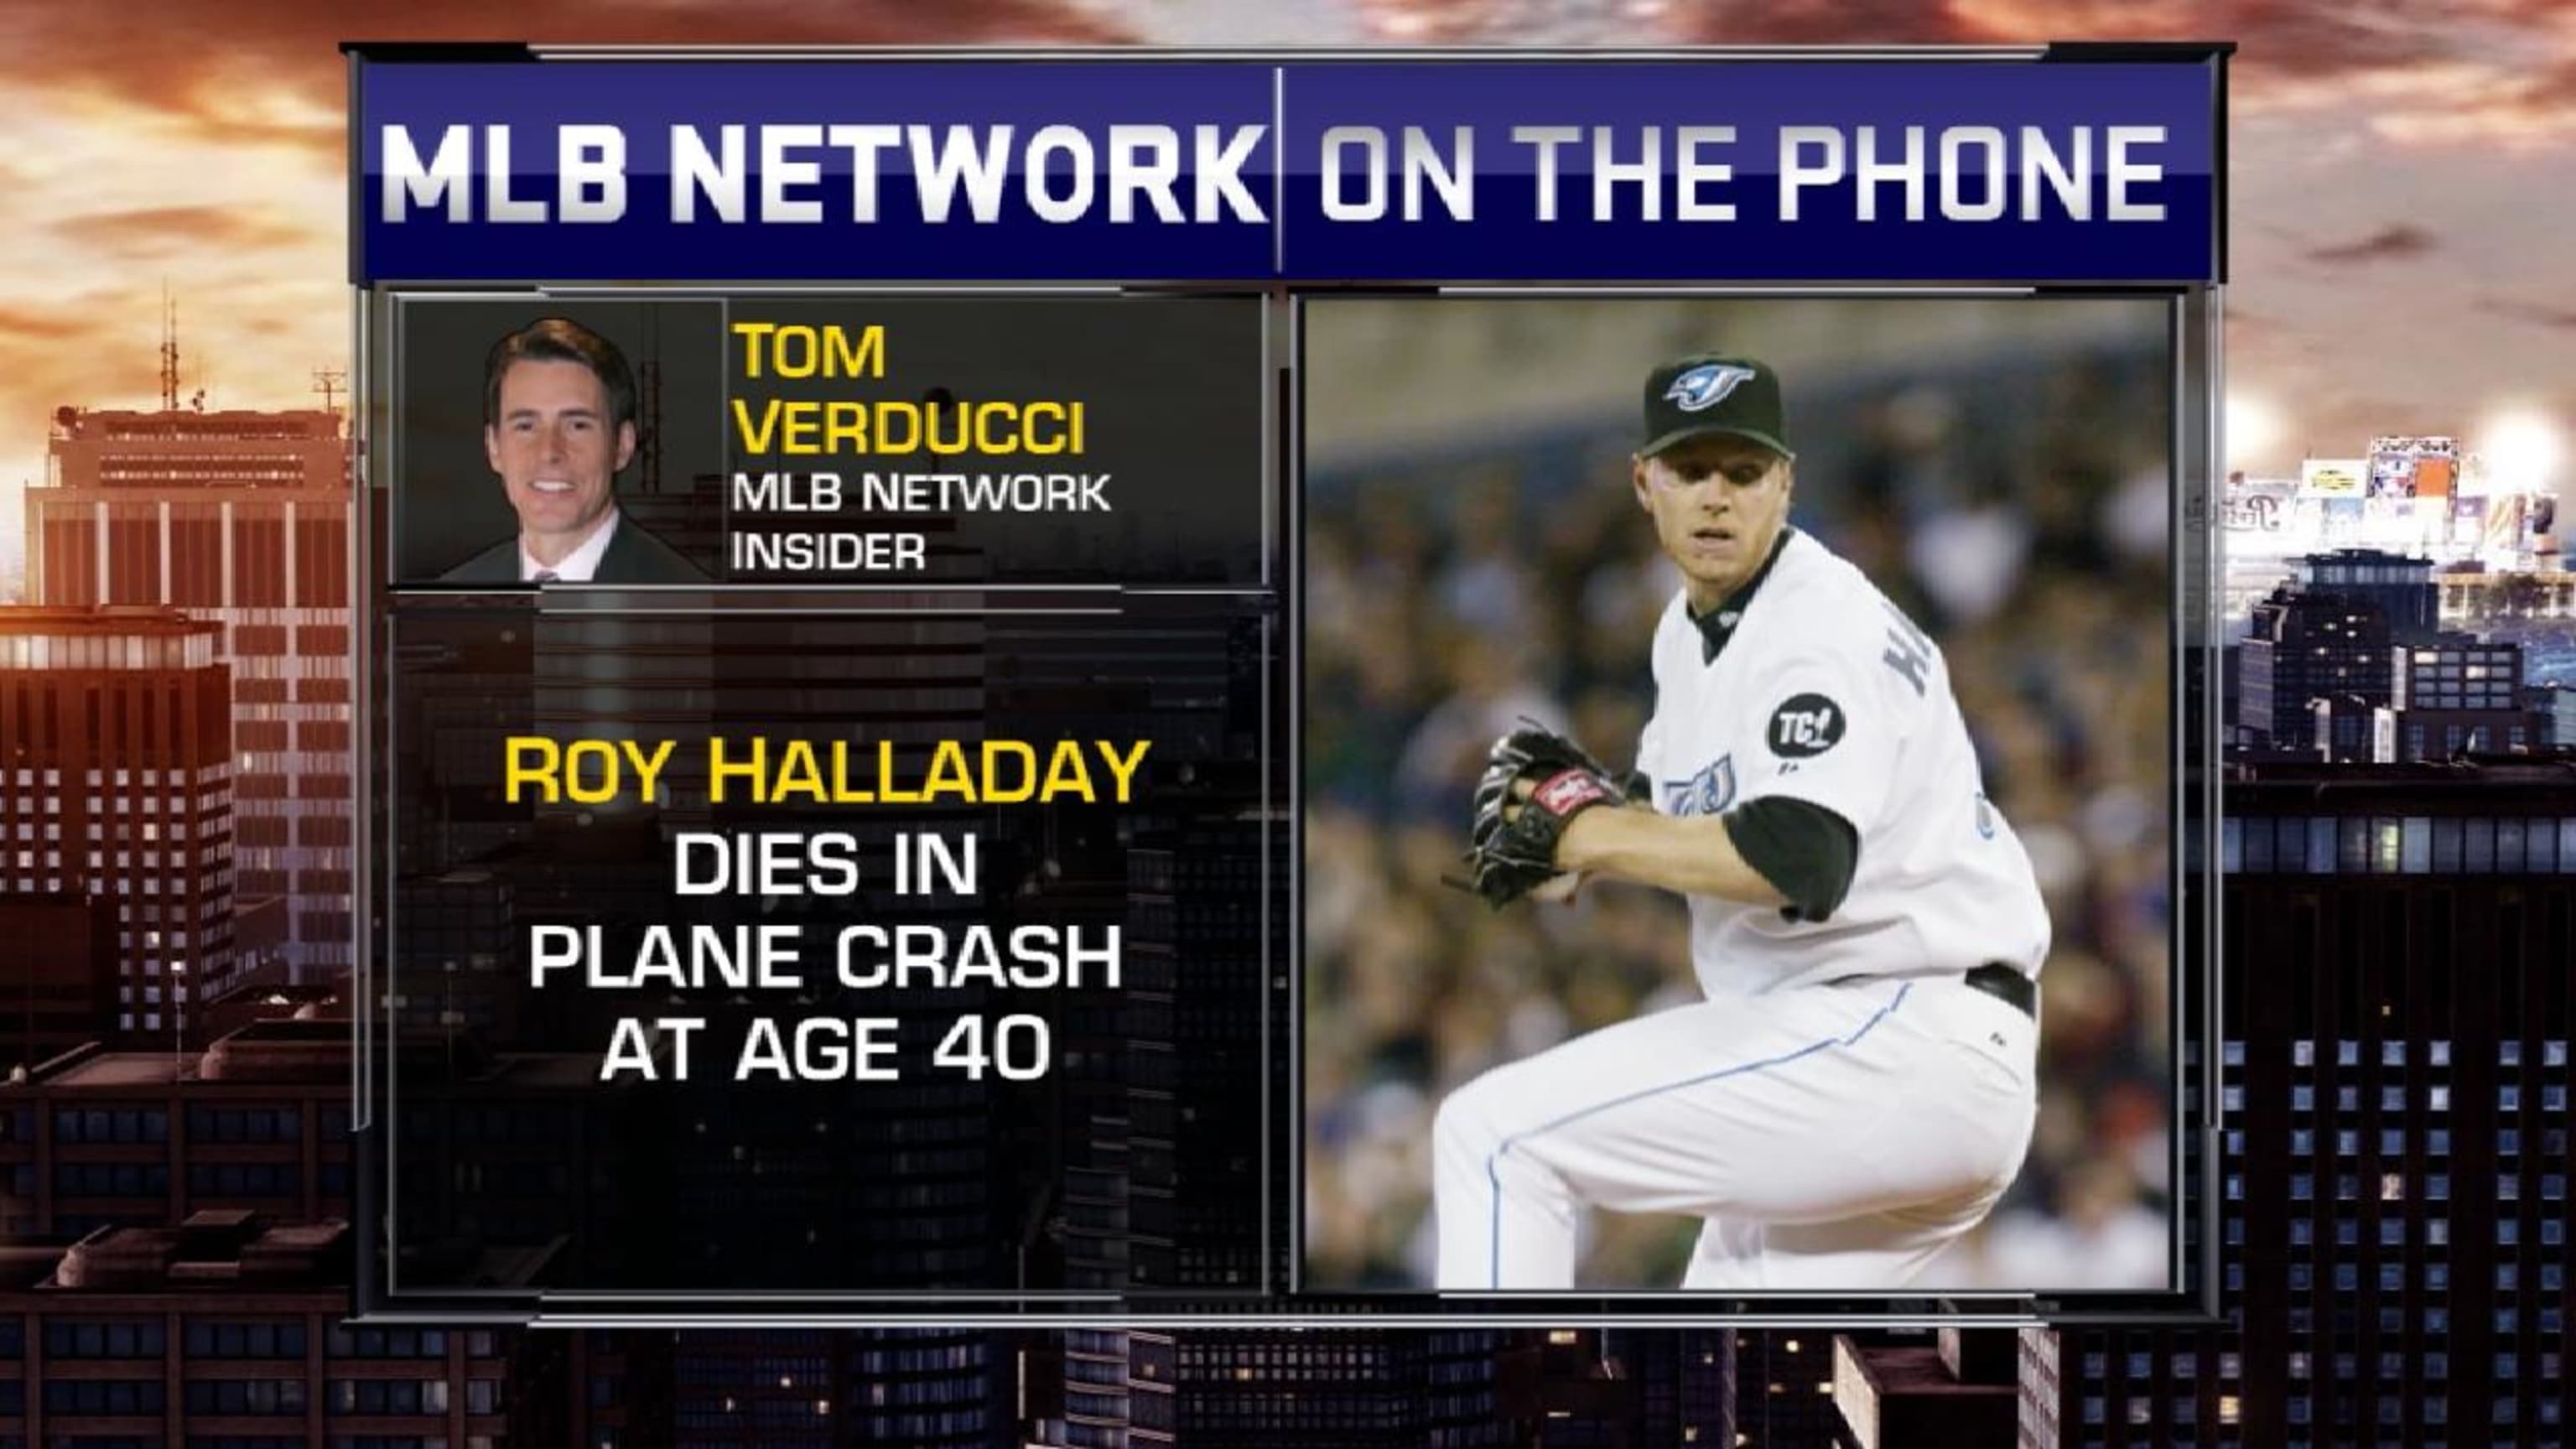 Former Toronto Blue Jays star pitcher Roy Halladay dies in plane crash